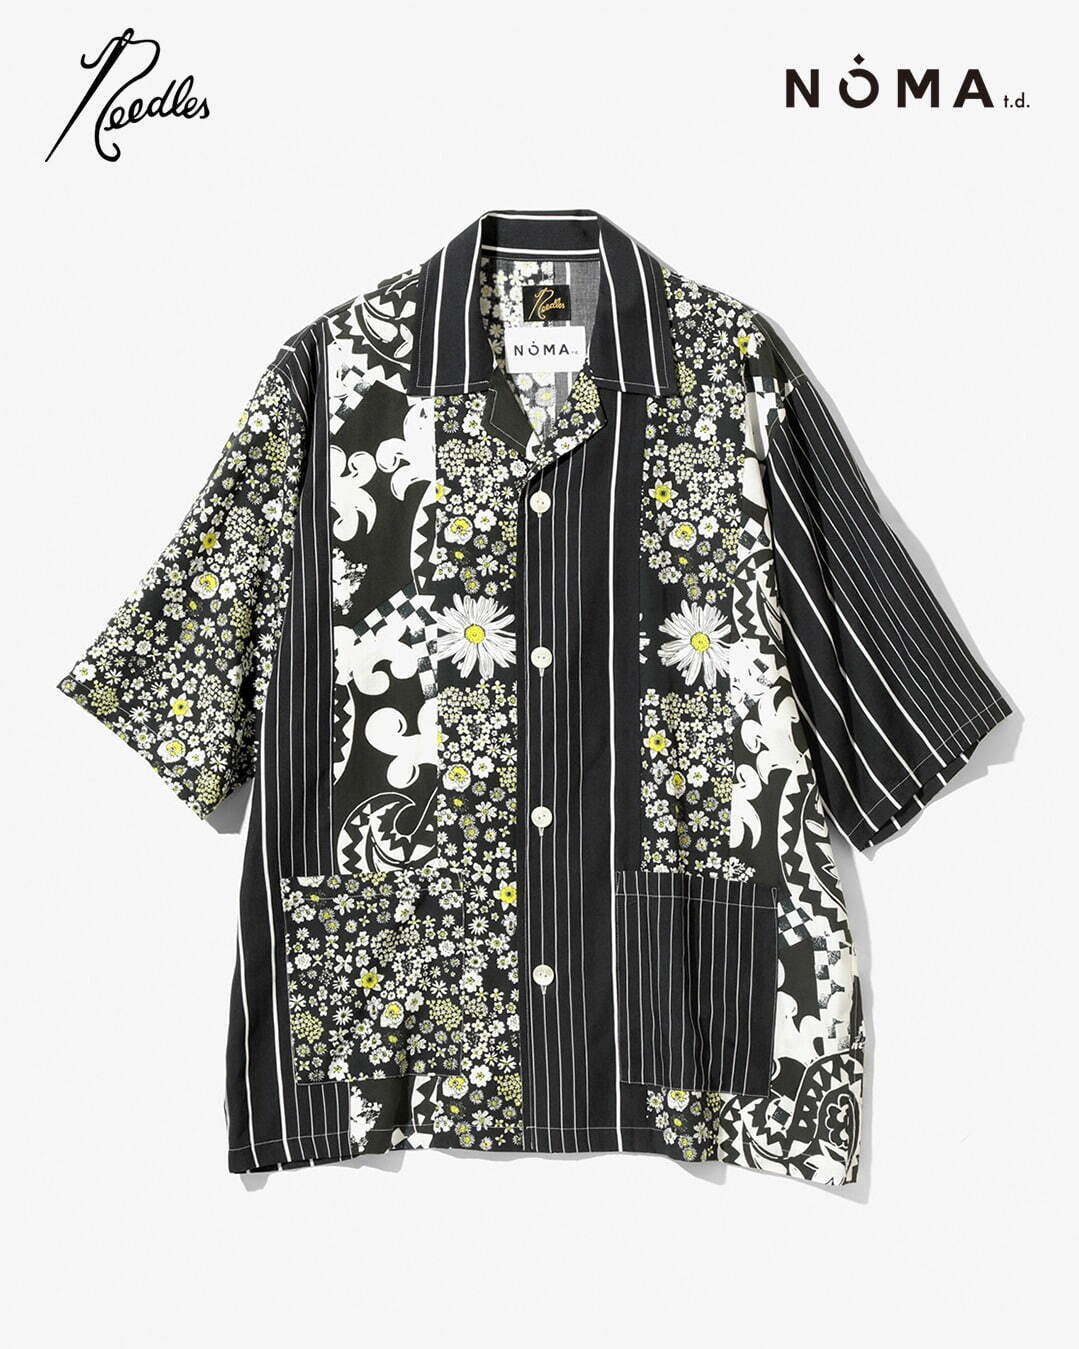 Cabana Shirt - Patchwork 34,100円